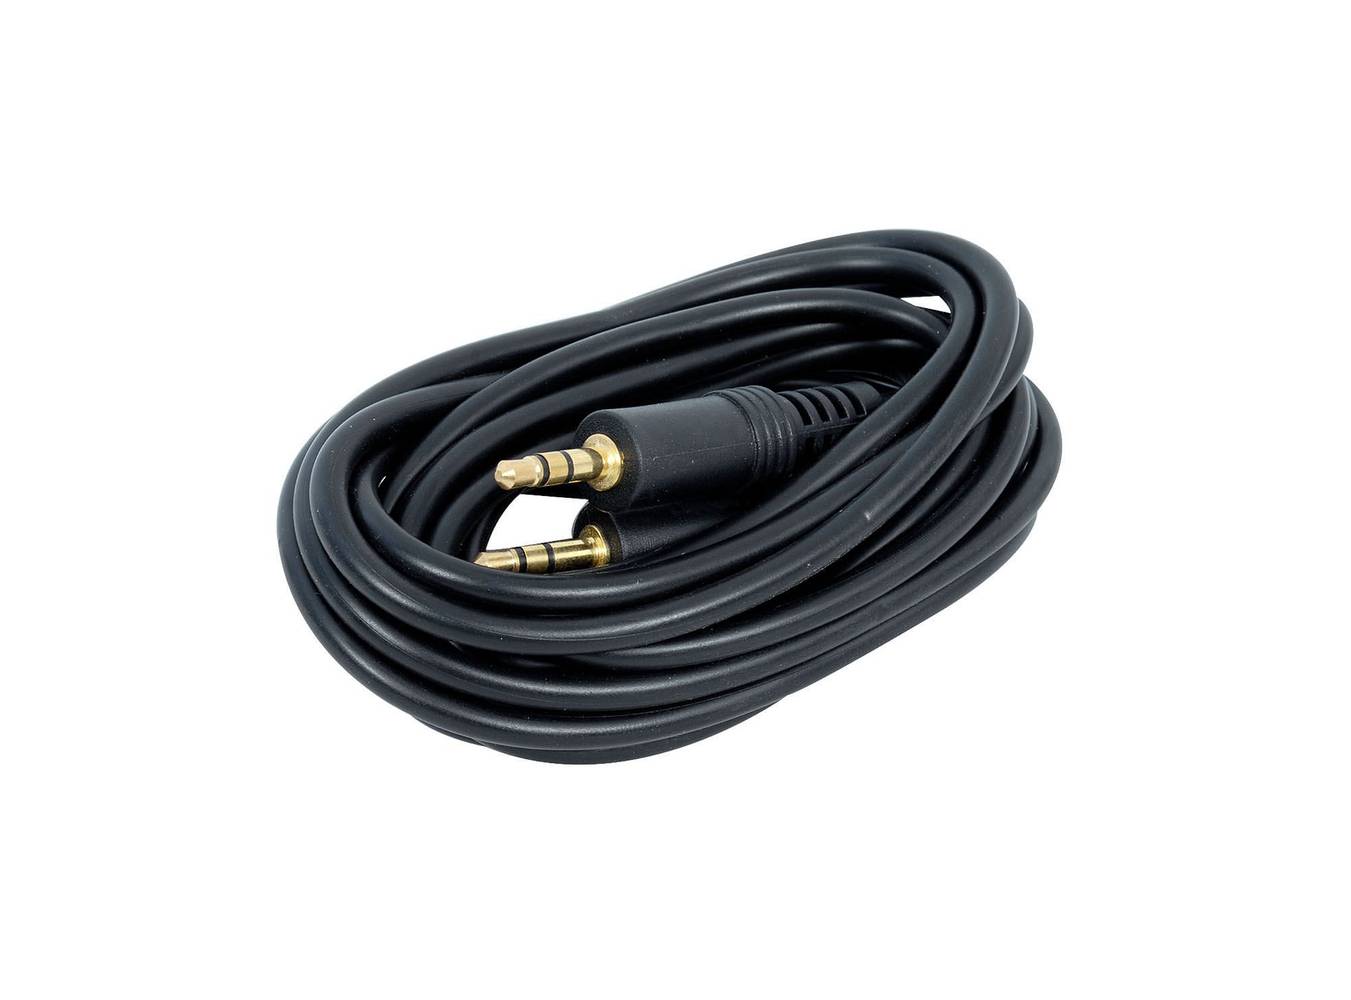 Macrotel cable 3.5 mm a 3.5 mm (1 un)